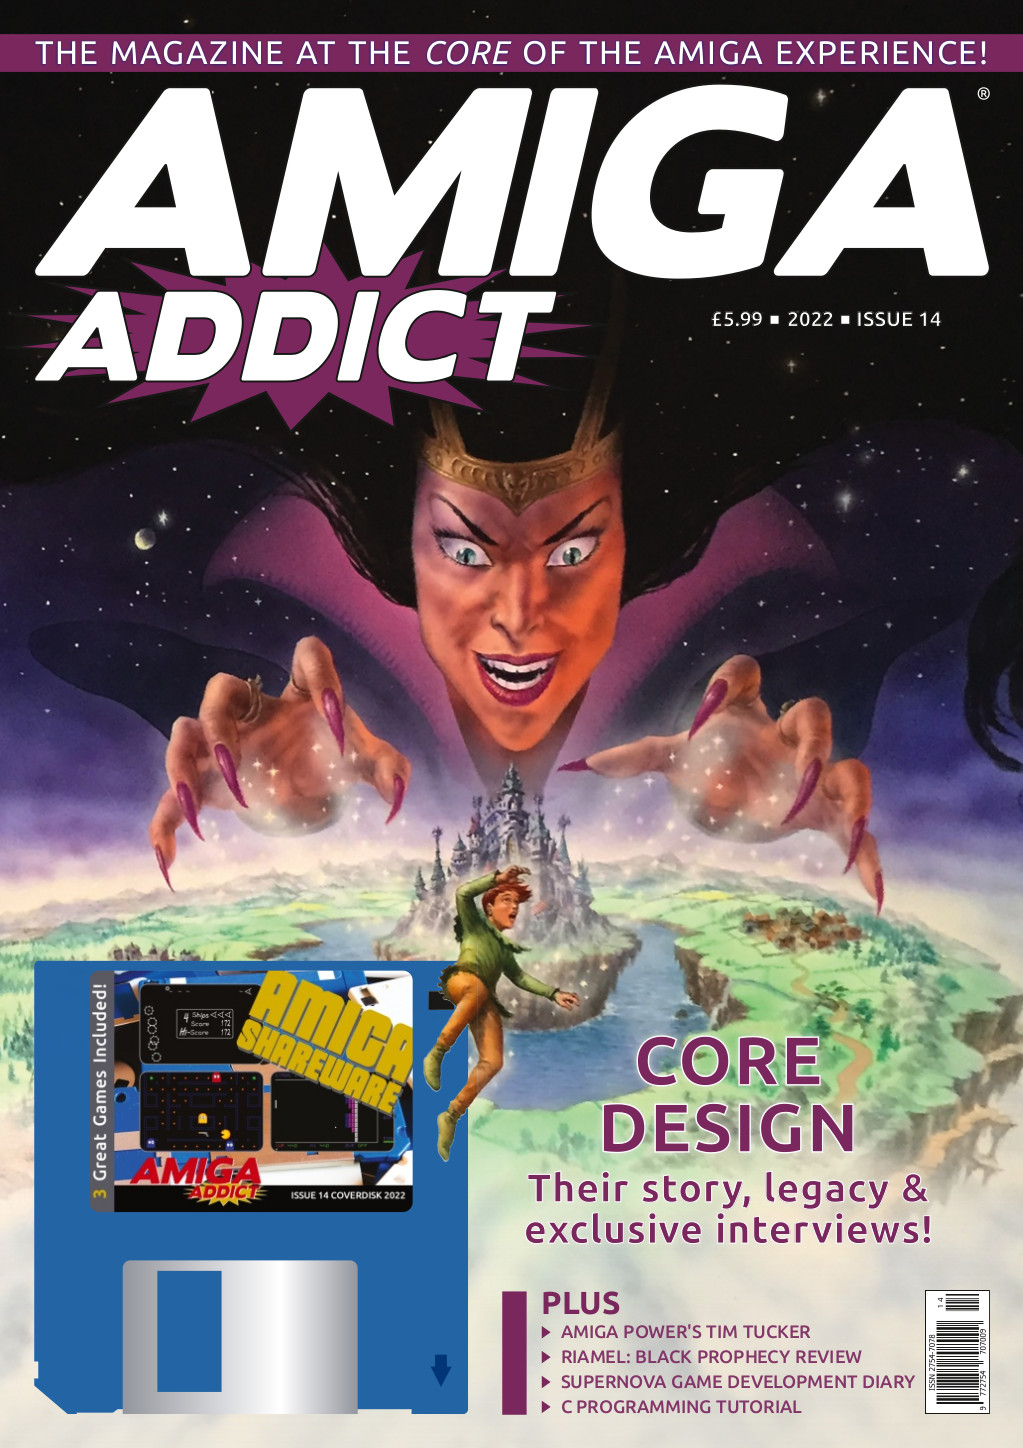 Core Design Amiga Addict magazine Issue 14